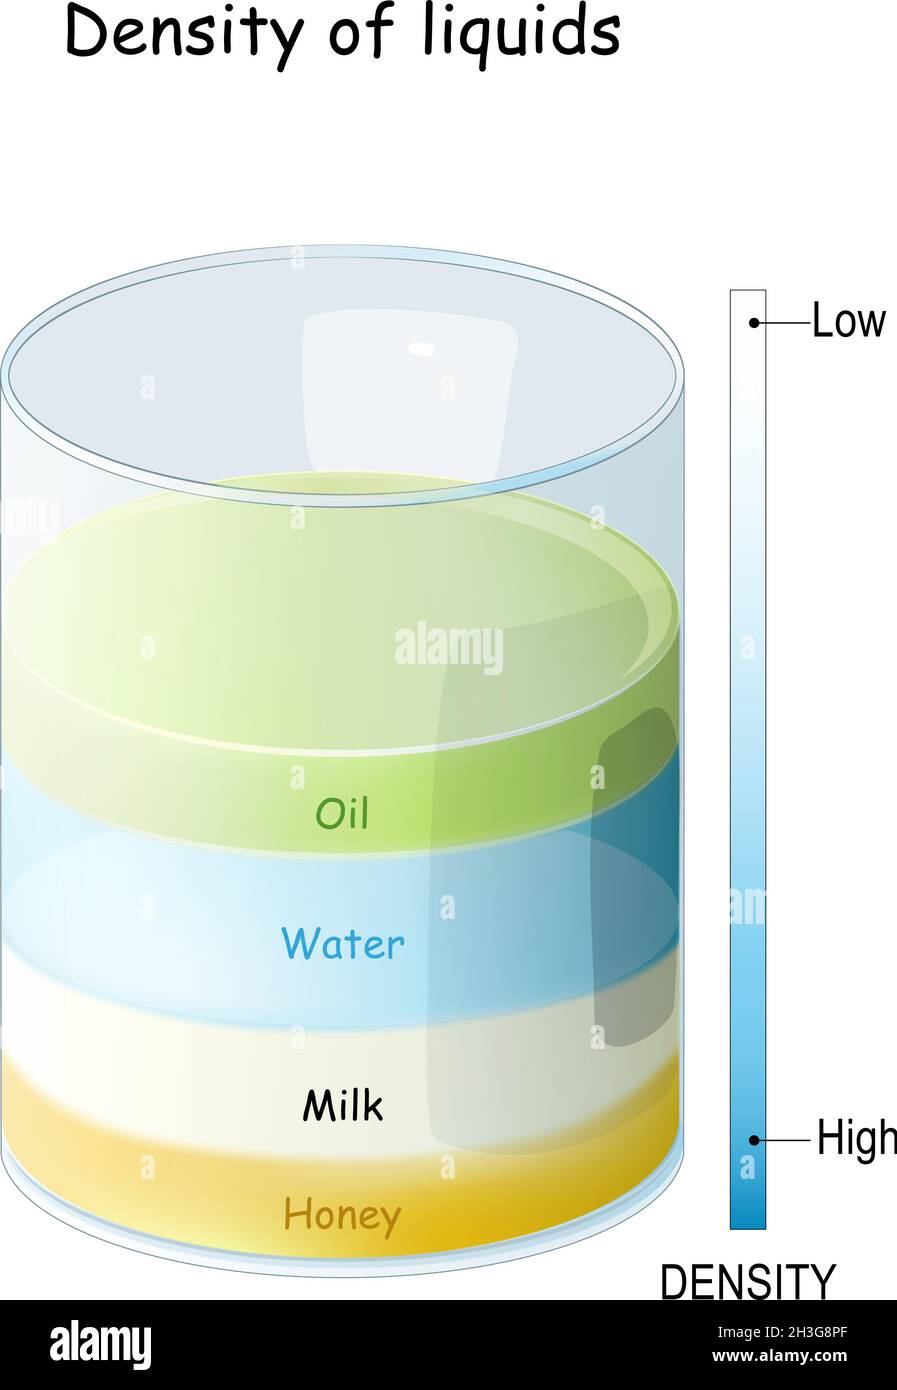 Dichte von Flüssigkeiten von Honig und Milch mit hoher Dichte zu Wasser und Öl mit niedriger Dichte. Ein Glaszylinder mit verschiedenen farbigen Flüssigkeiten Stock Vektor